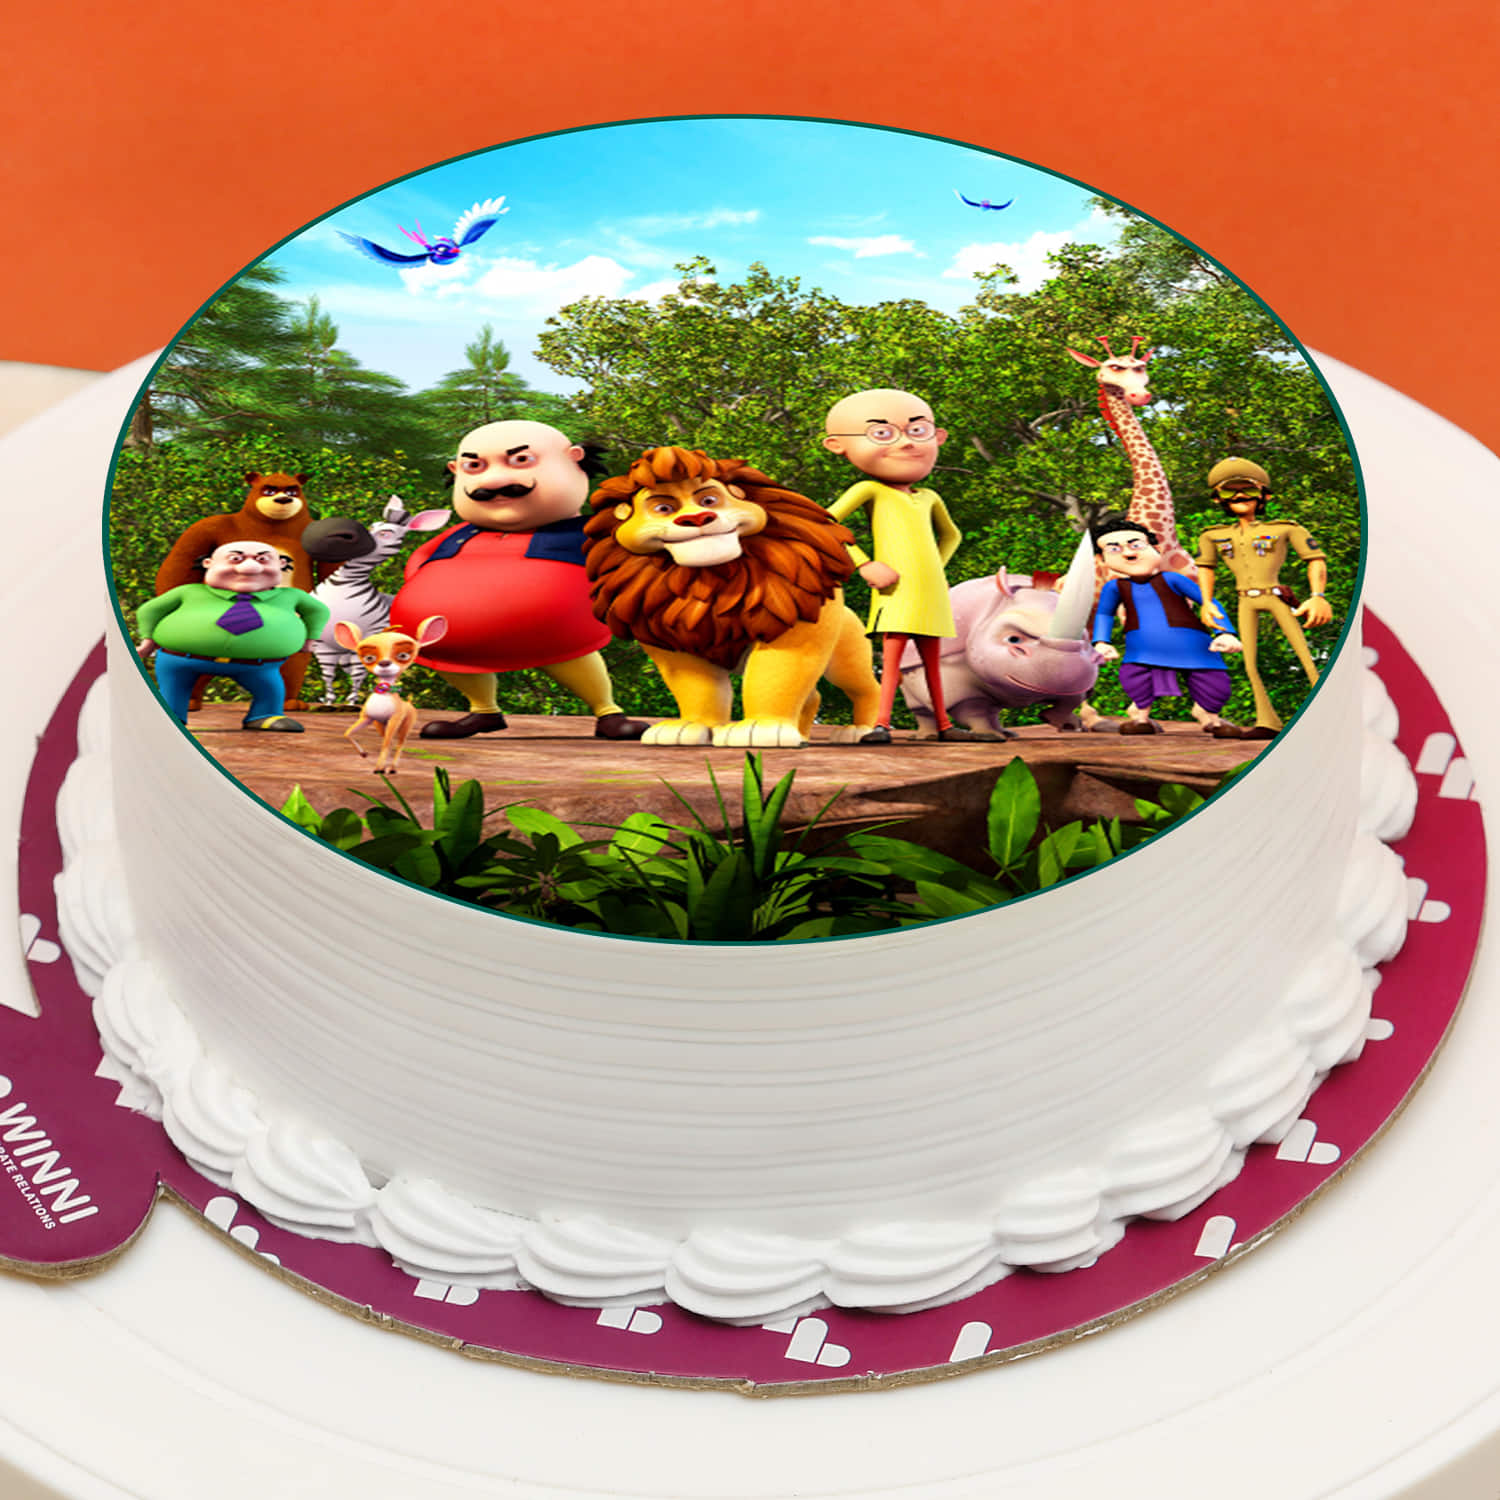 Motu Patlu Cake | Cake designs birthday, Cake, Cake decorating